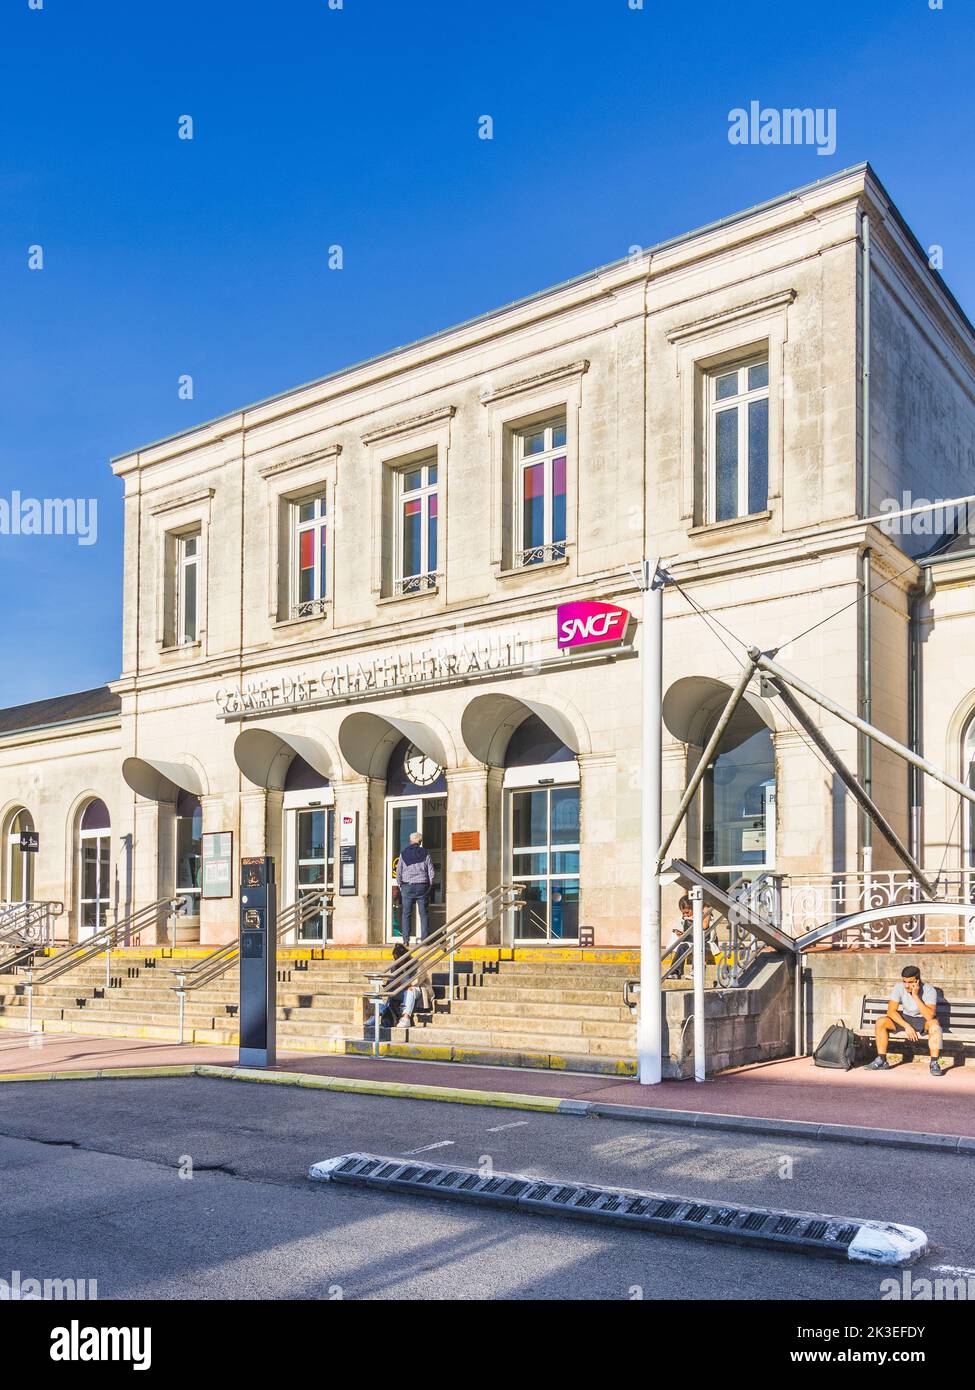 Fachada y entrada de la estación de tren SNCF francesa / Gare de Chatellerault - Chatellerault, Vienne (86), Francia. Foto de stock